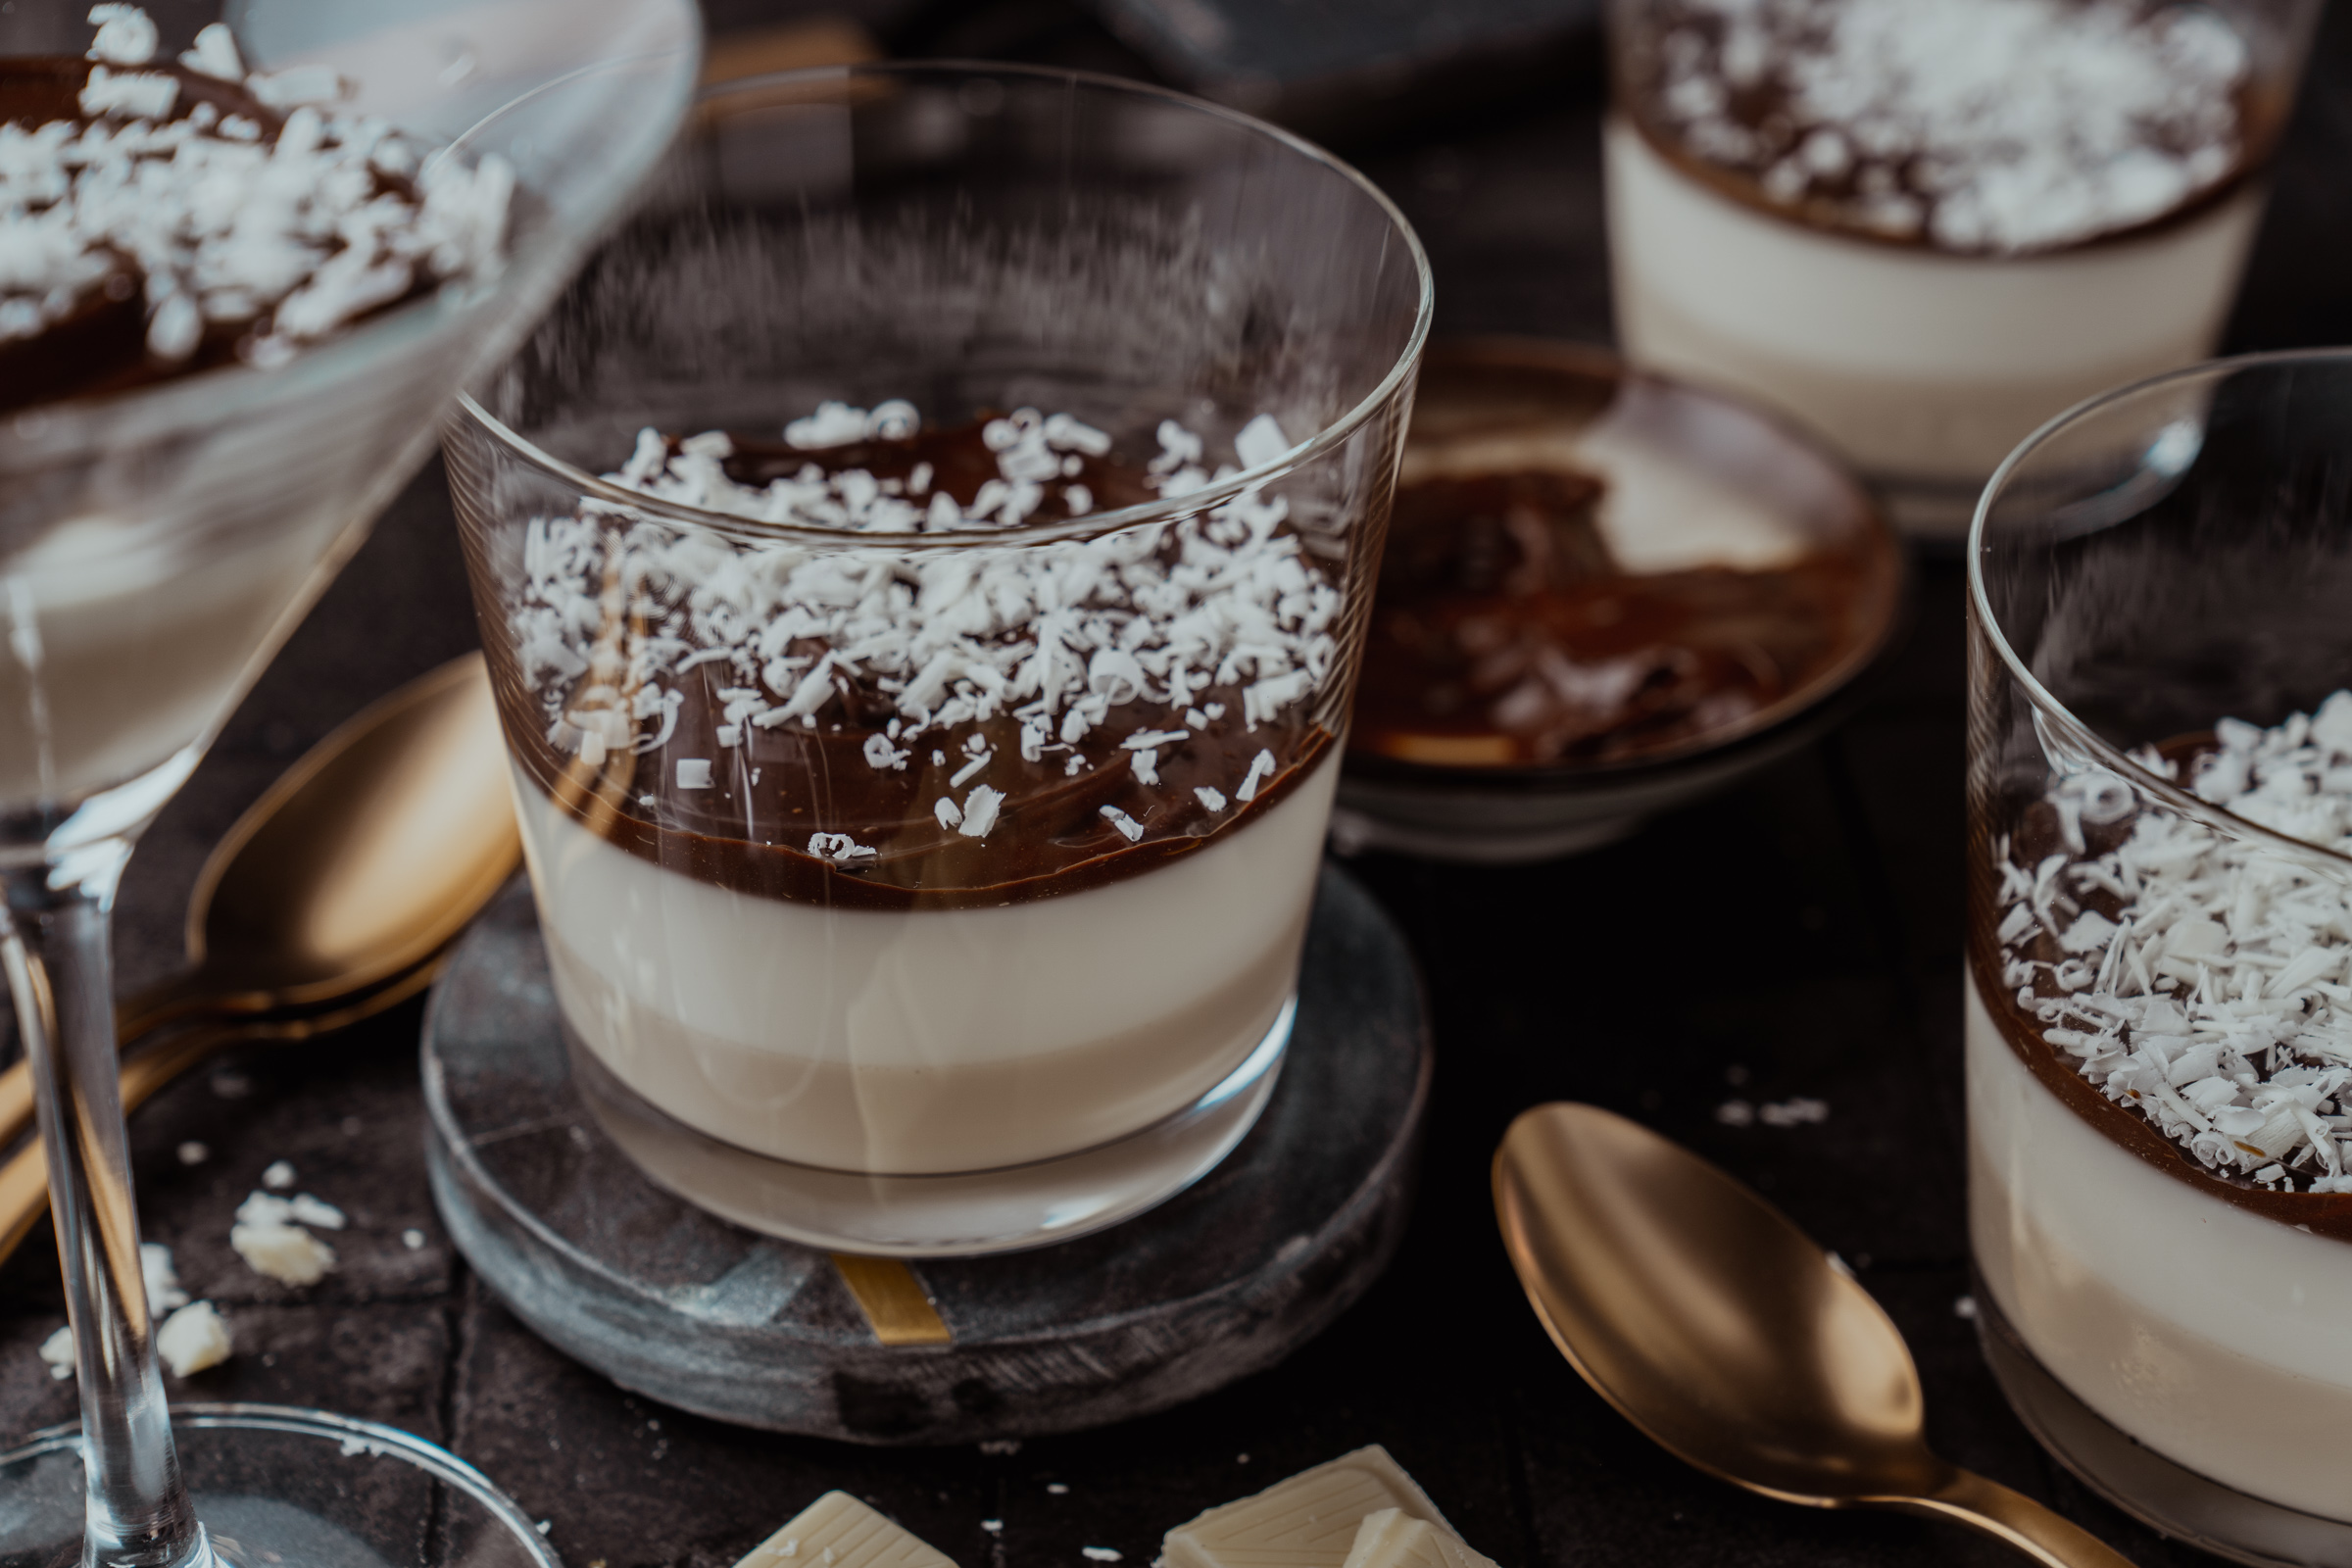 Rezept für Barraquito Panna Cotta. Schokolade, Espresso, Licor 43! Inspiriert durch den berühmten kanarischen Cocktail. Wer kann da schon Nein sagen?!